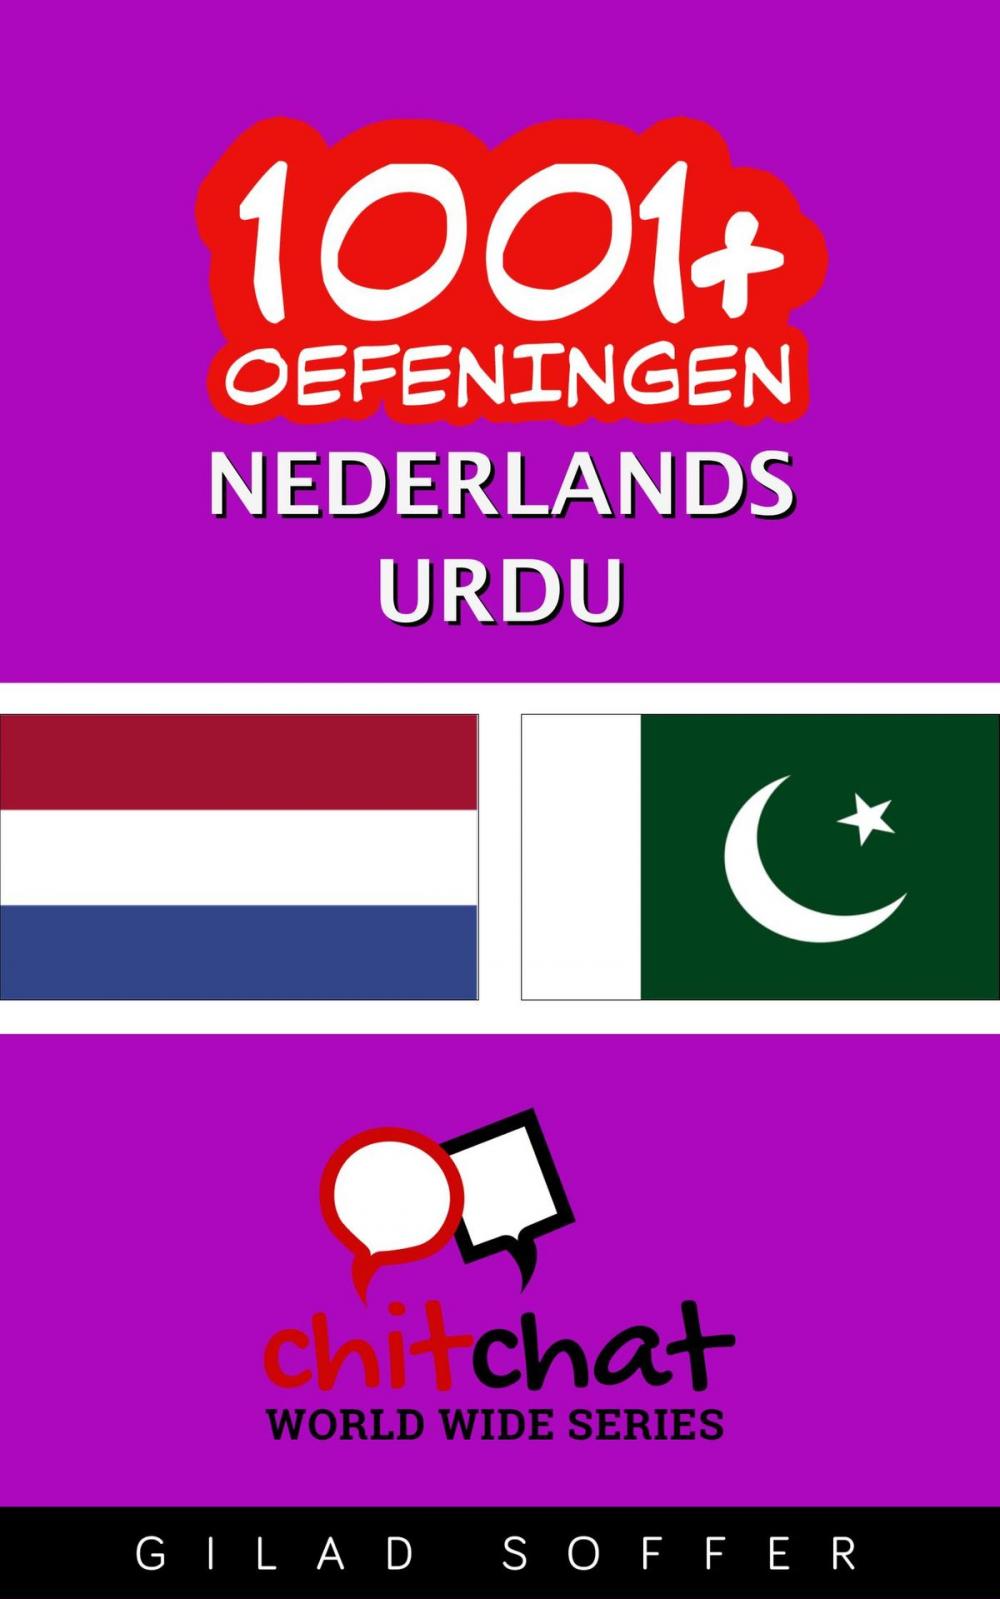 Big bigCover of 1001+ oefeningen nederlands - Urdu